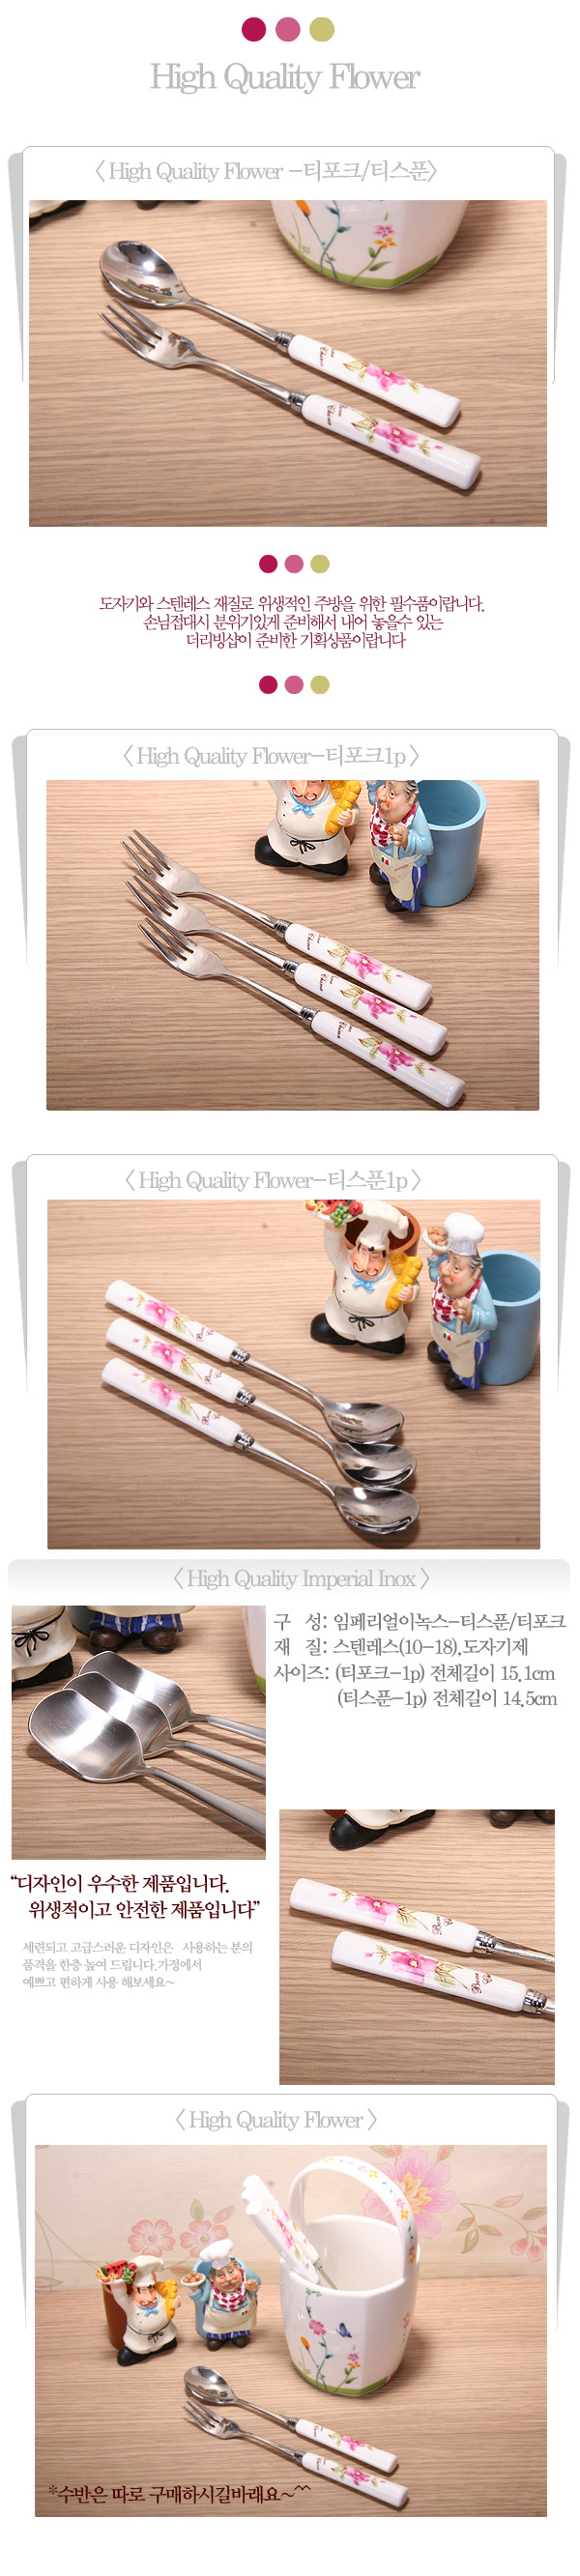 14-flowerl-teapok spoon.jpg